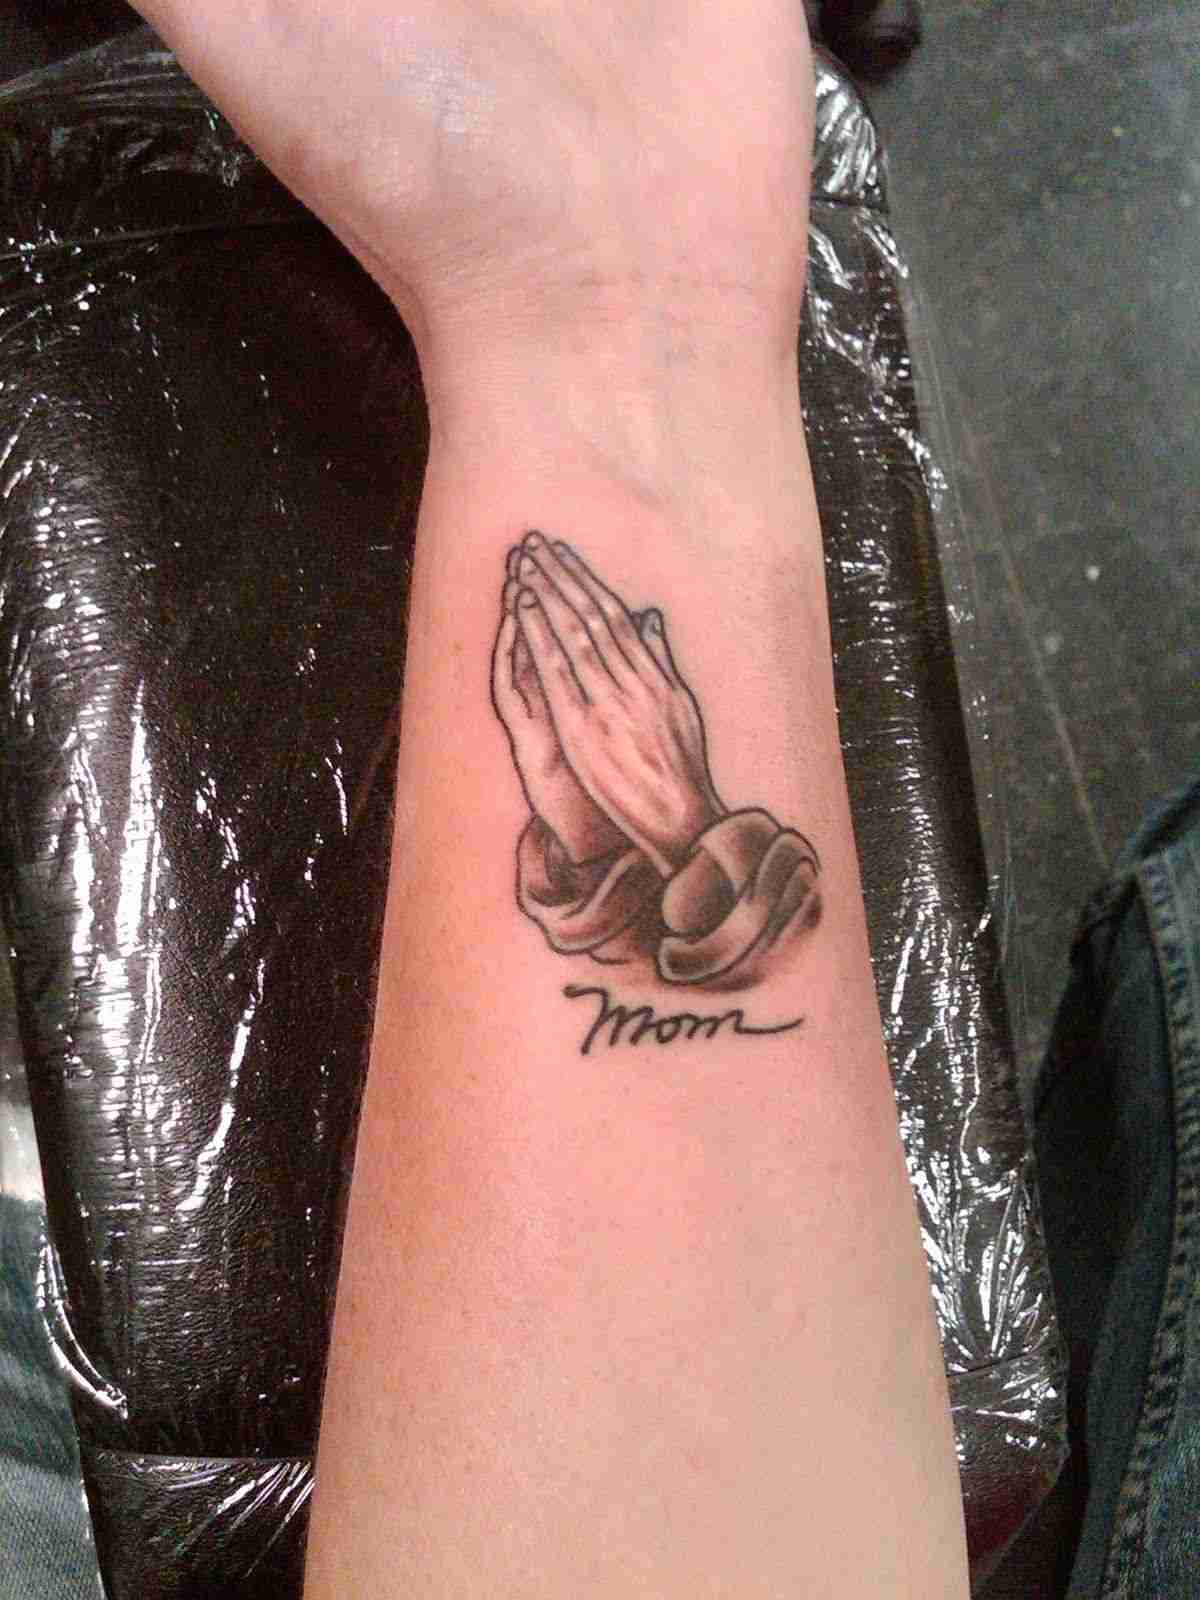 Tattoosymbole und ihre Bedeutung offene Hände Tattoomotiv Handgelenk Tattooideen